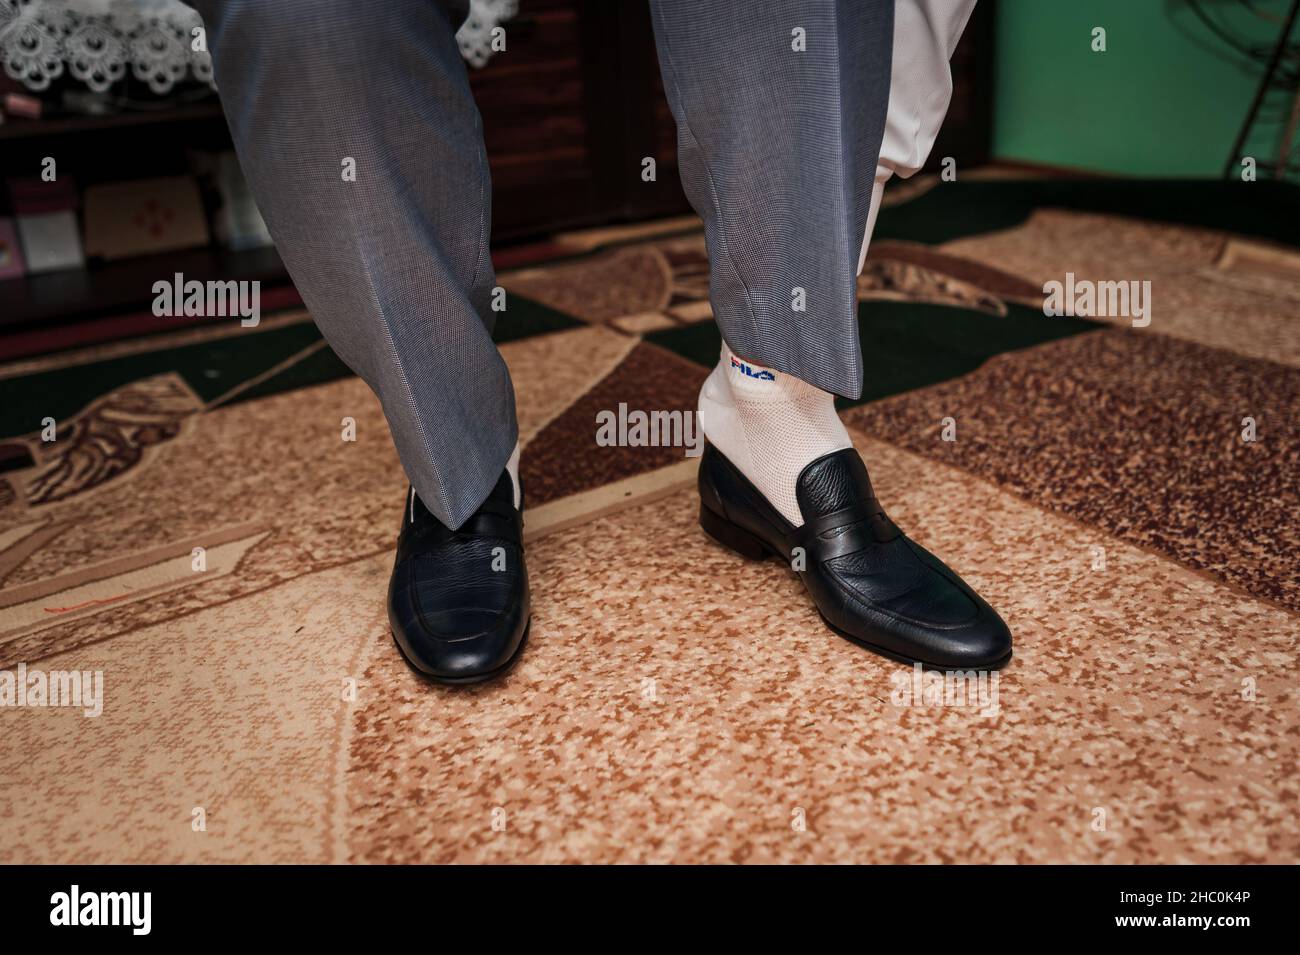 Un homme porte des chaussures noires en gros plan Banque D'Images